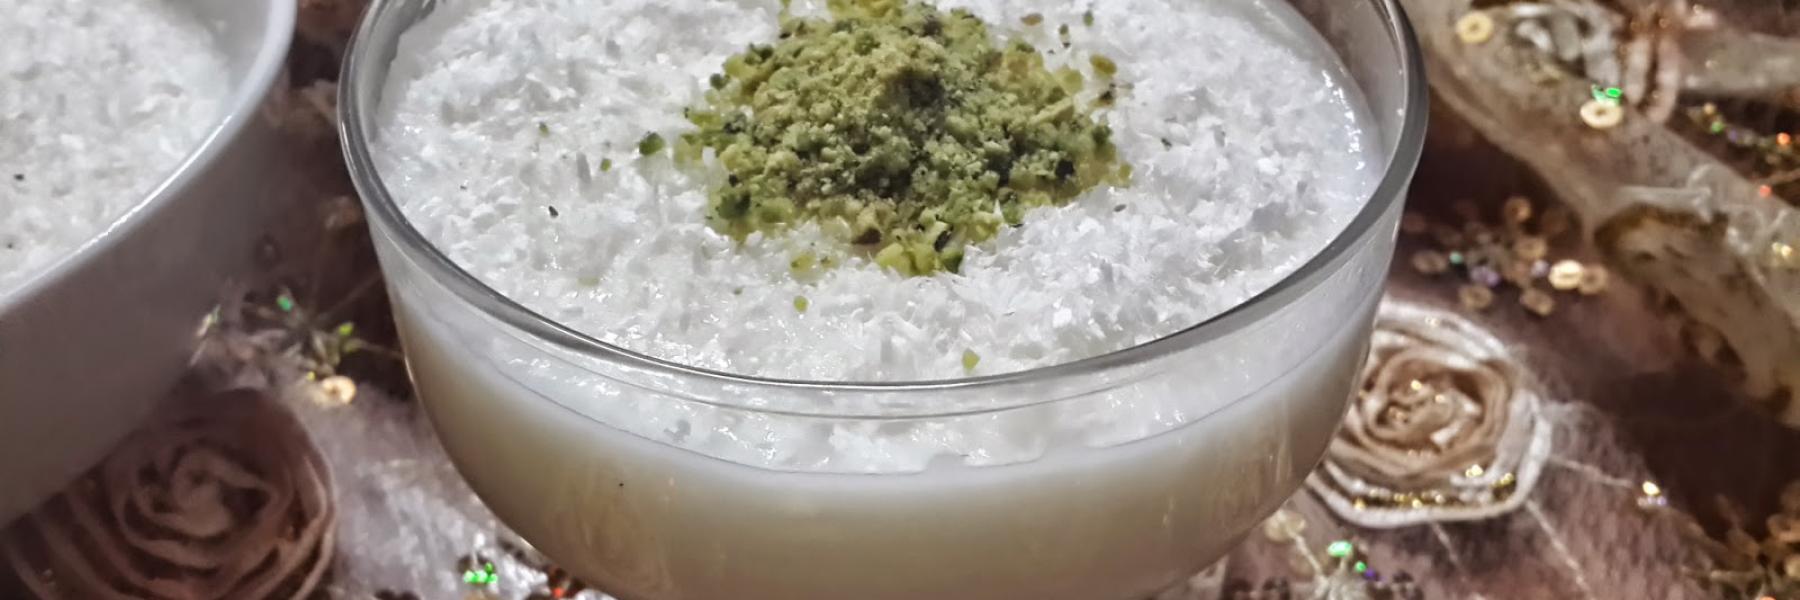 طريقة عمل حلاوة الأرز المطحون